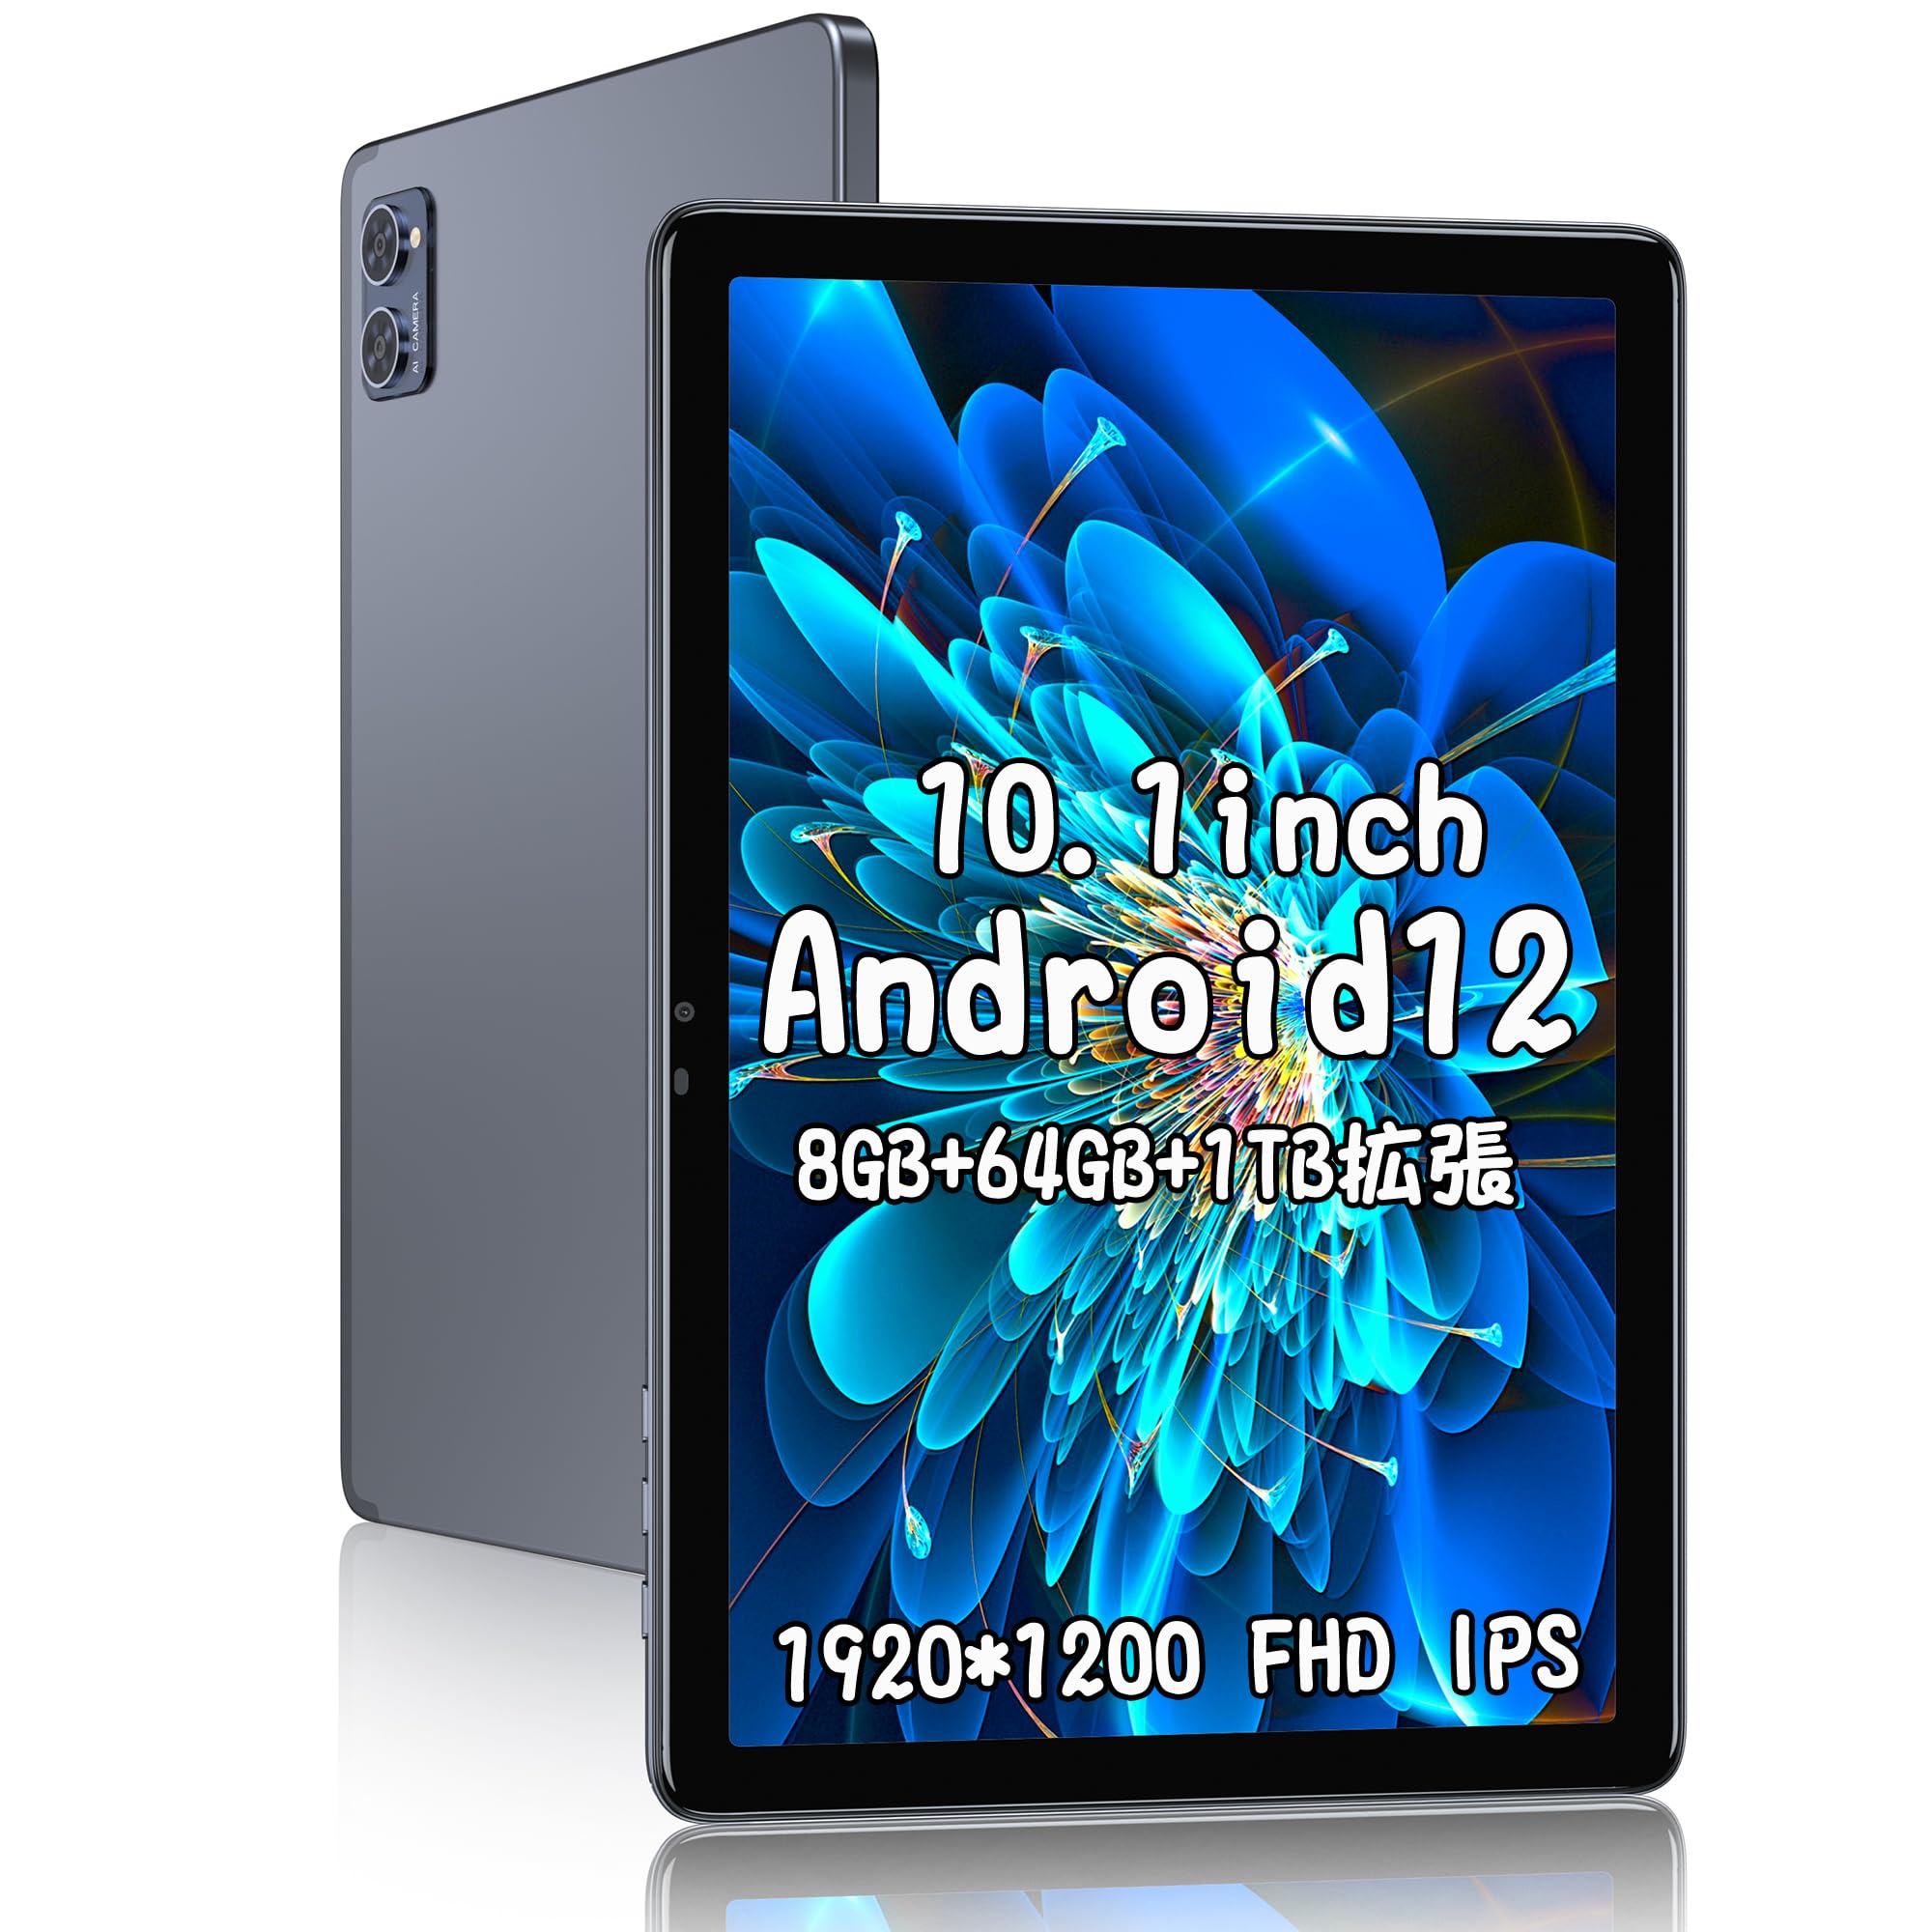 楽天松陰屋 楽天市場店タブレット 10.1インチ 1920*1200FHD Android12 メモリ8GB ストレージ64GB 4コア Wi-Fiモデル カメラ8MP/5MP 大容量バッテリー6000mAh Bluetooth 5.0 Type-C充電 顔認識 GPS搭載 G